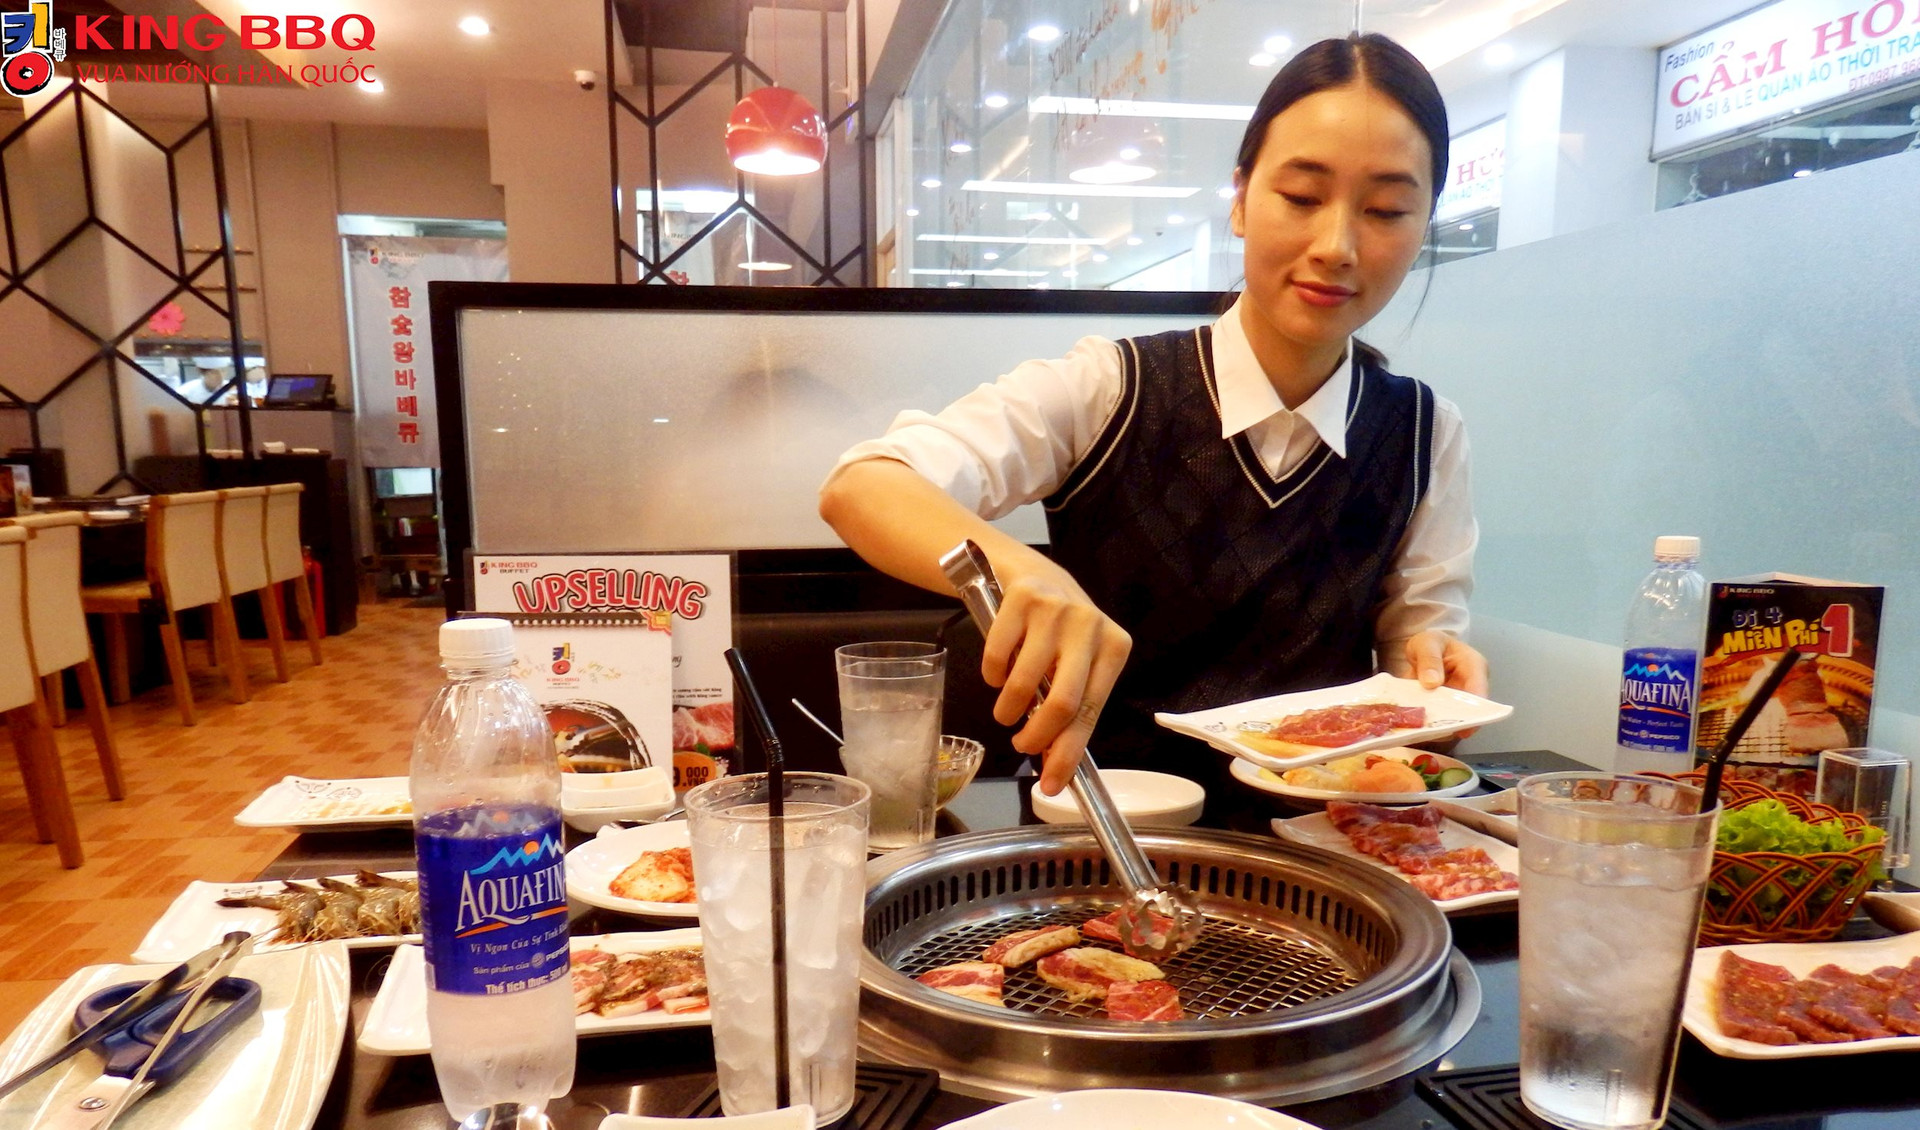 VNDirect bất ngờ lấn sân mảng ẩm thực, đầu tư vào chuỗi ẩm thực sở hữu King BBQ, ThaiExpress, Seoul Garden